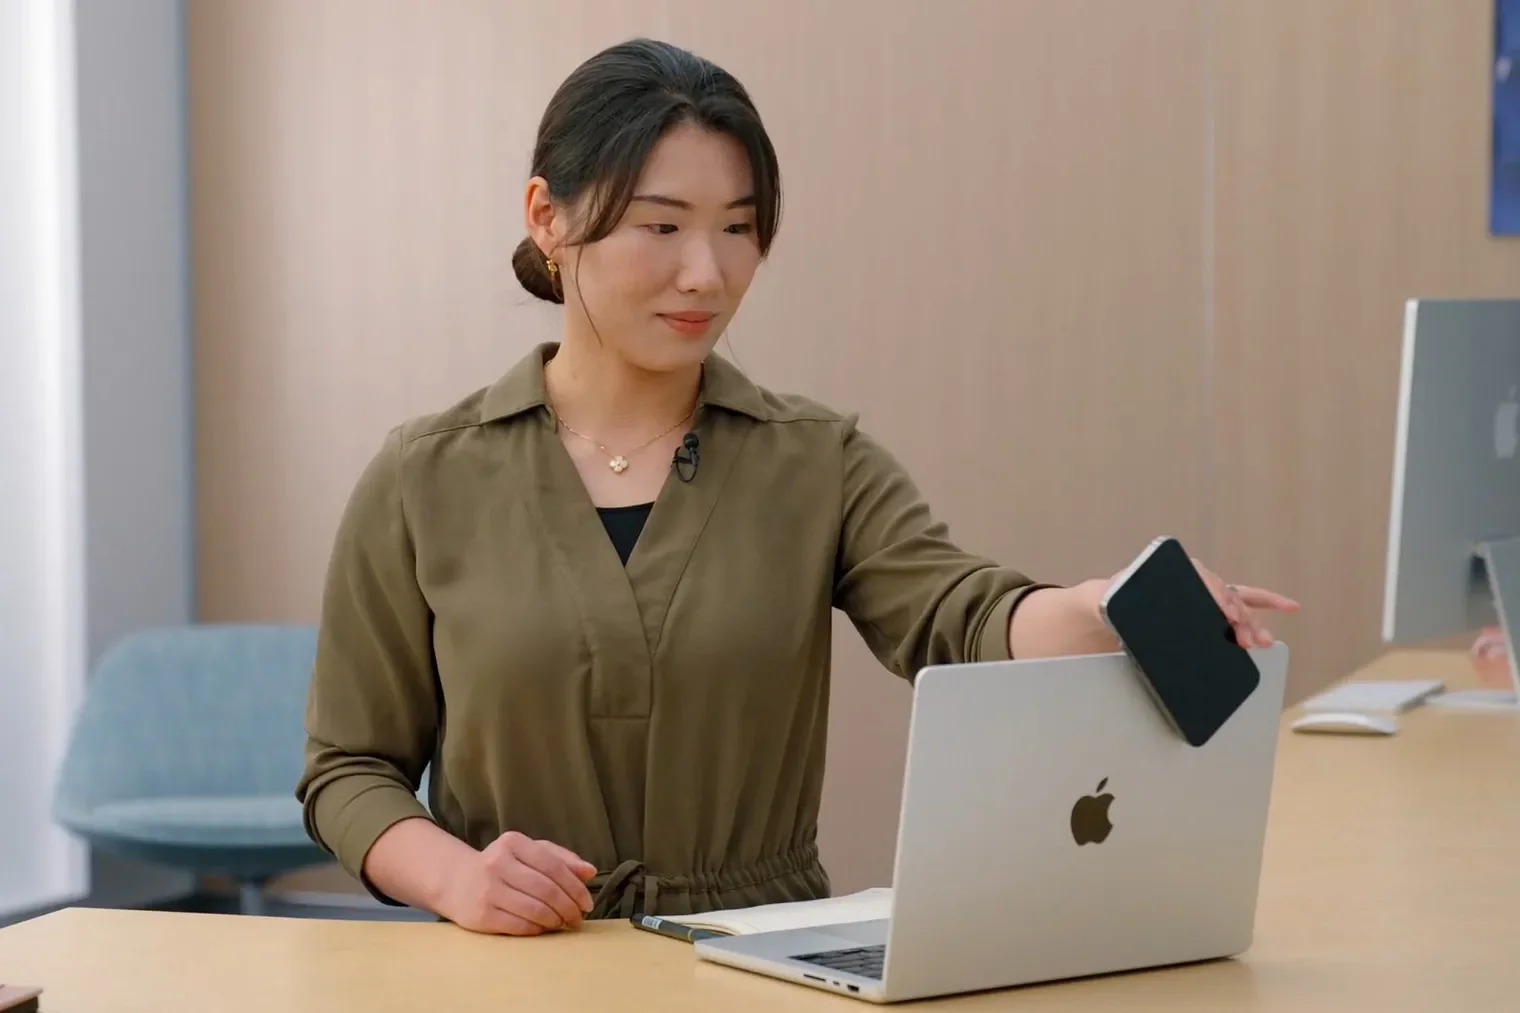 Η Apple εξηγεί πως μπορούν οι χρήστες να αξιοποιήσουν πλήρως το iPhone τους ως webcam στο Mac